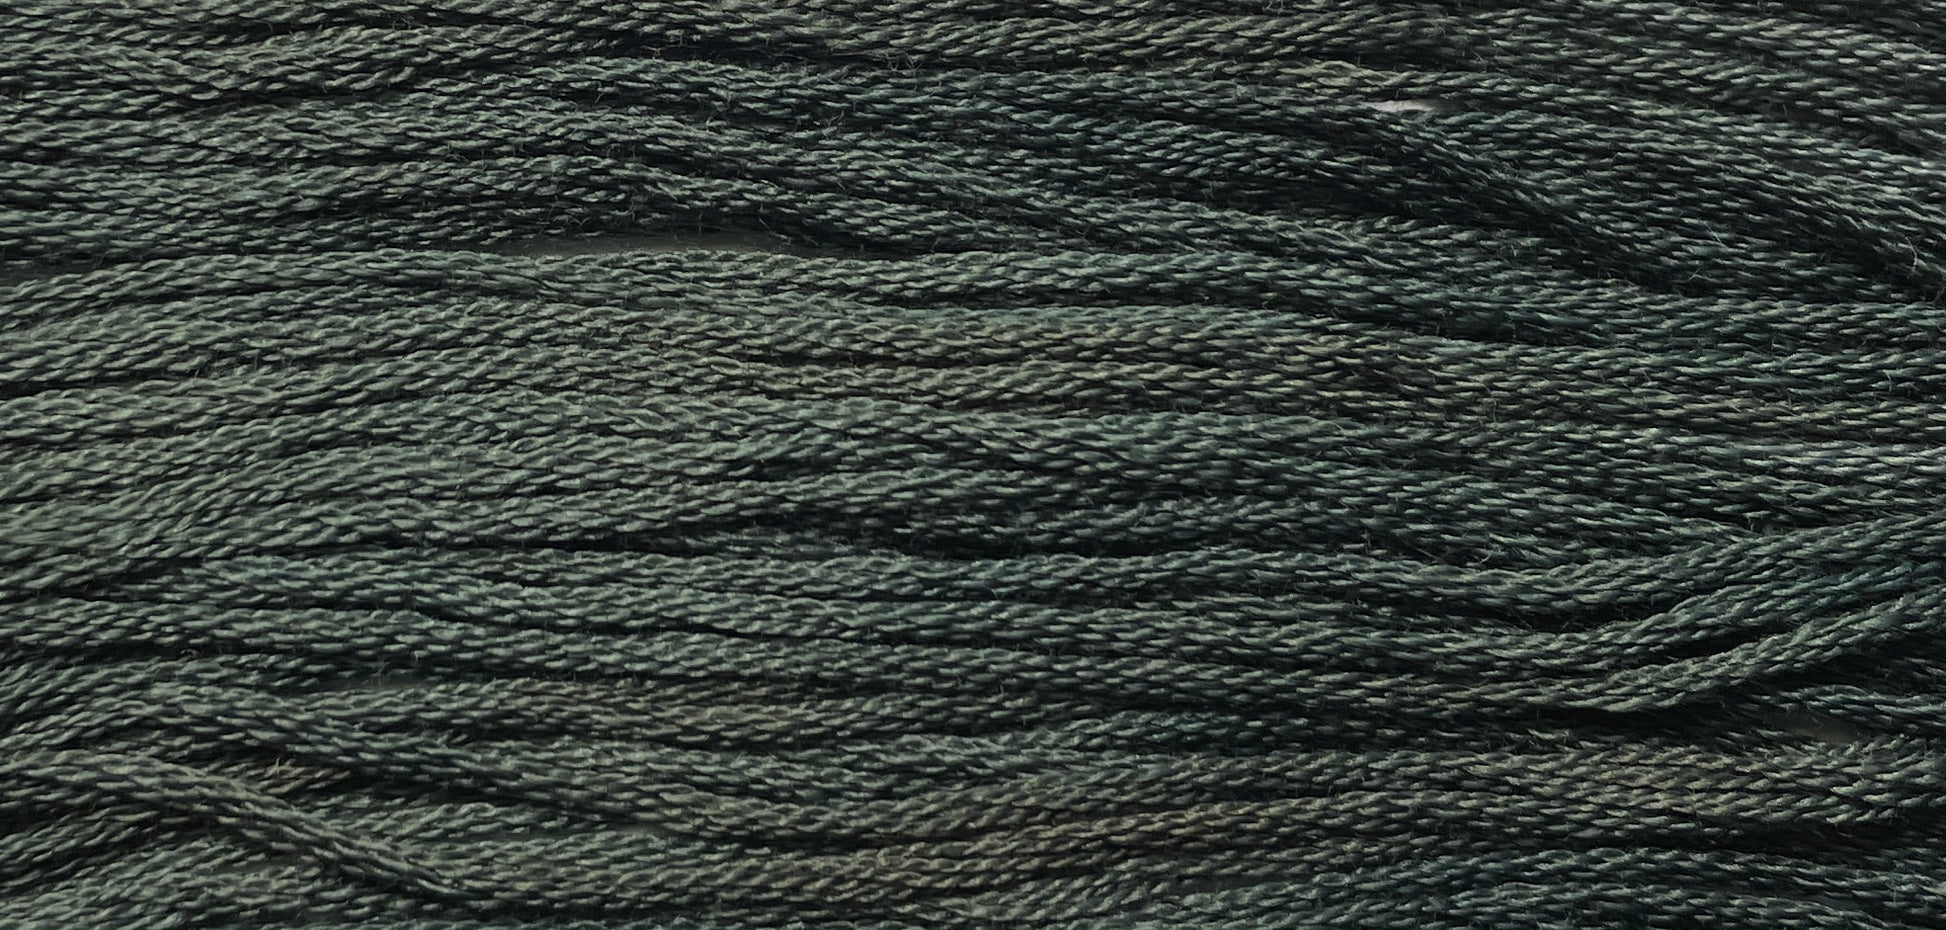 Onyx - Gentle Arts Cotton Thread - 5 yard Skein - Cross Stitch Floss, Thread & Floss, Thread & Floss, The Crafty Grimalkin - A Cross Stitch Store